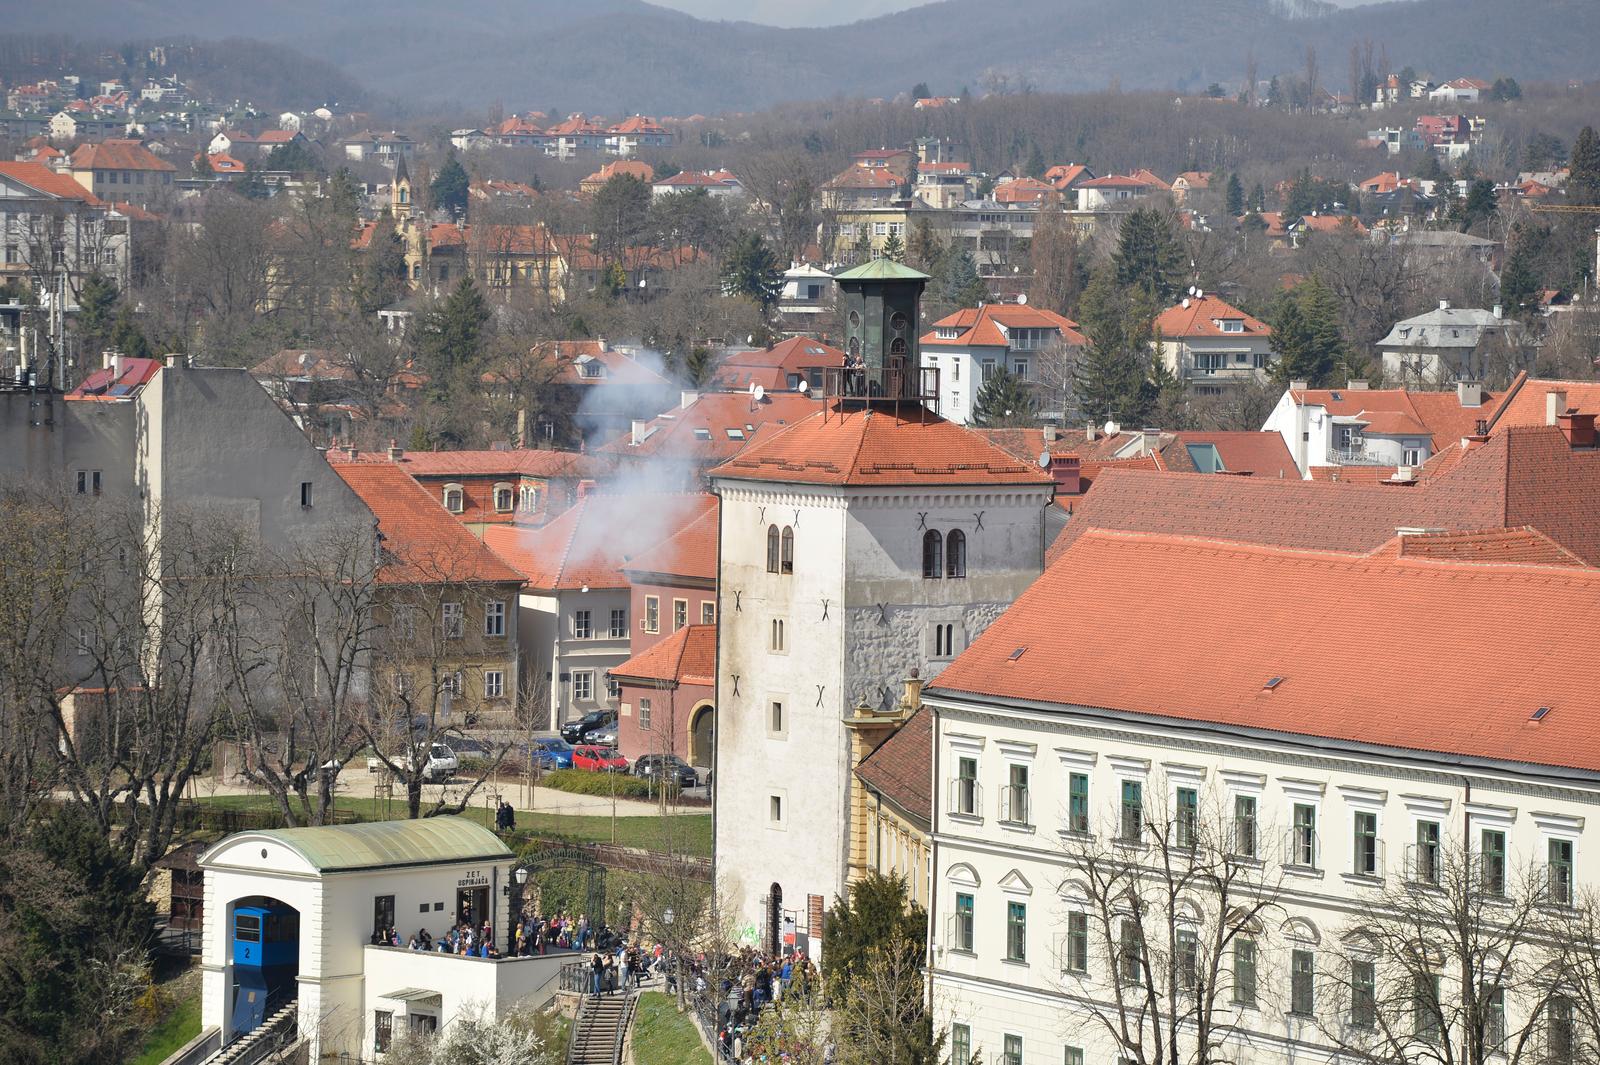 26.03.2015., Zagreb - Pogled s Zagreb Eye vidikovca na gradske znamenitosti i ustanove. Gornji grad. 

Photo: Marko Lukunic/PIXSELL